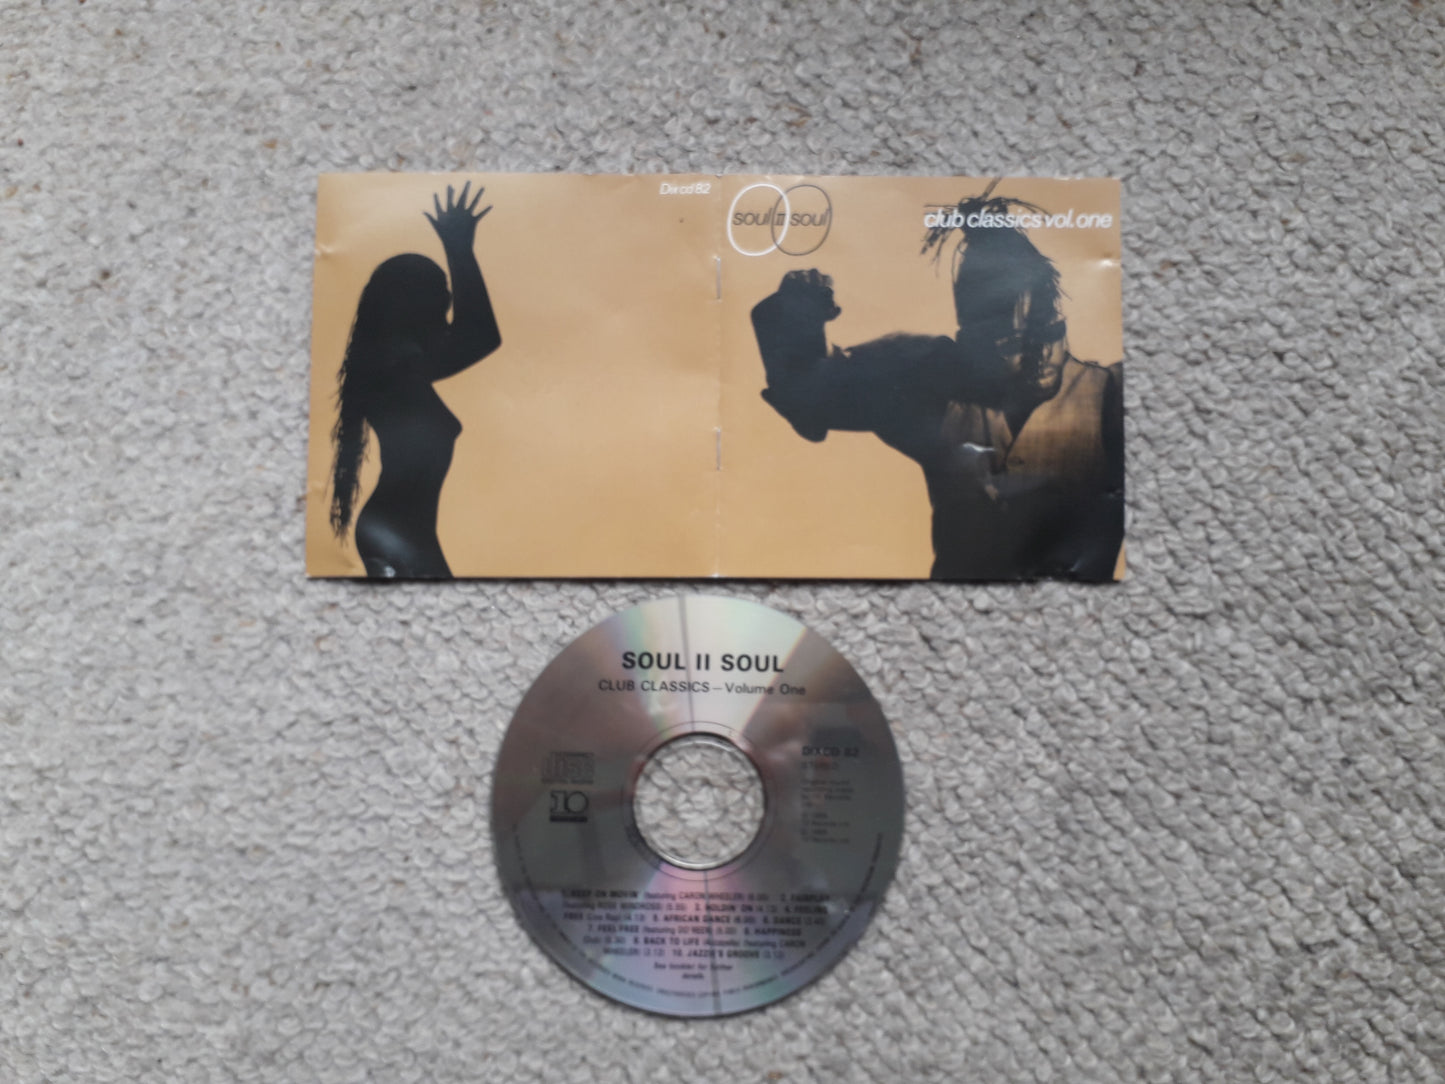 Soul II Soul-Club Classics Vol. One CD (Dix cd 82)